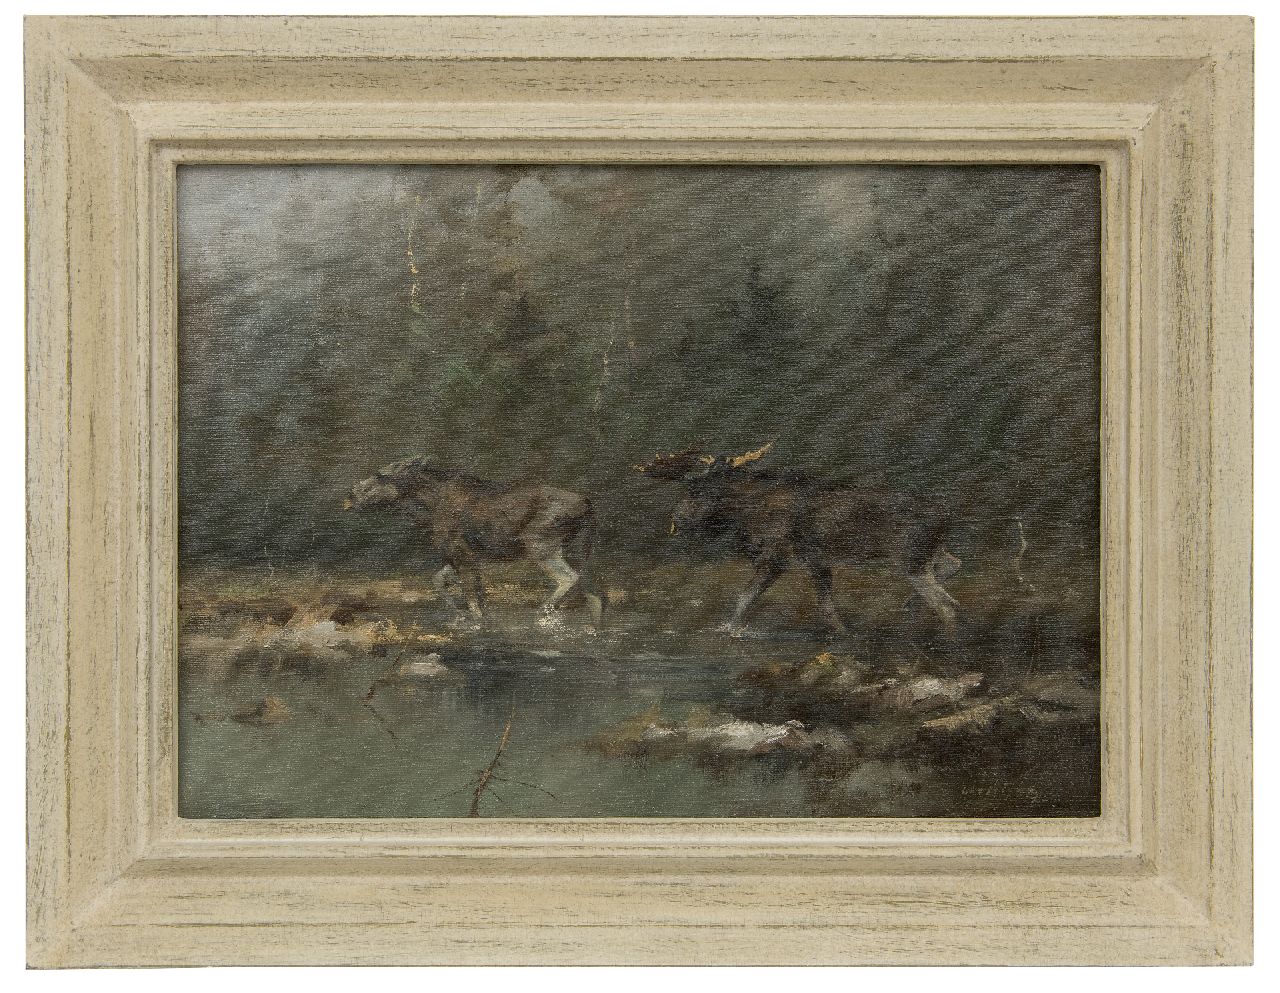 Schatz M.  | Manfred Schatz | Schilderijen te koop aangeboden | Elandenpaar bij een rivier, olieverf op doek 40,0 x 55,6 cm, gesigneerd rechtsonder